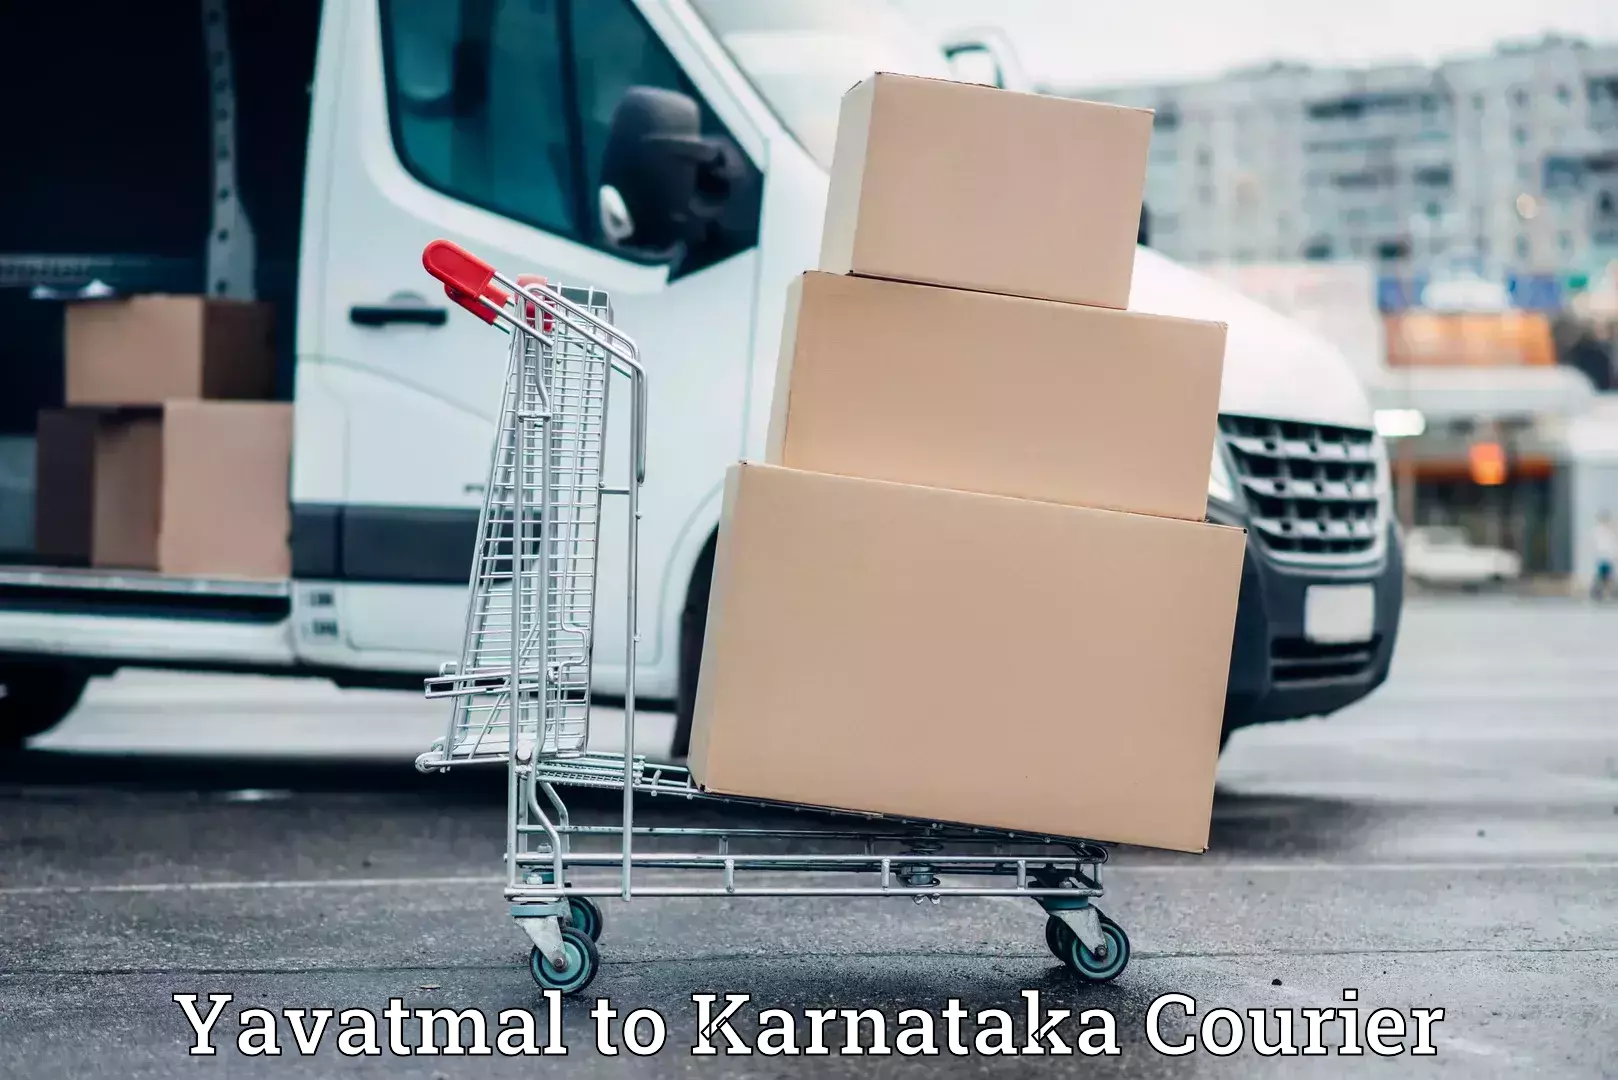 Furniture moving experts Yavatmal to Karnataka